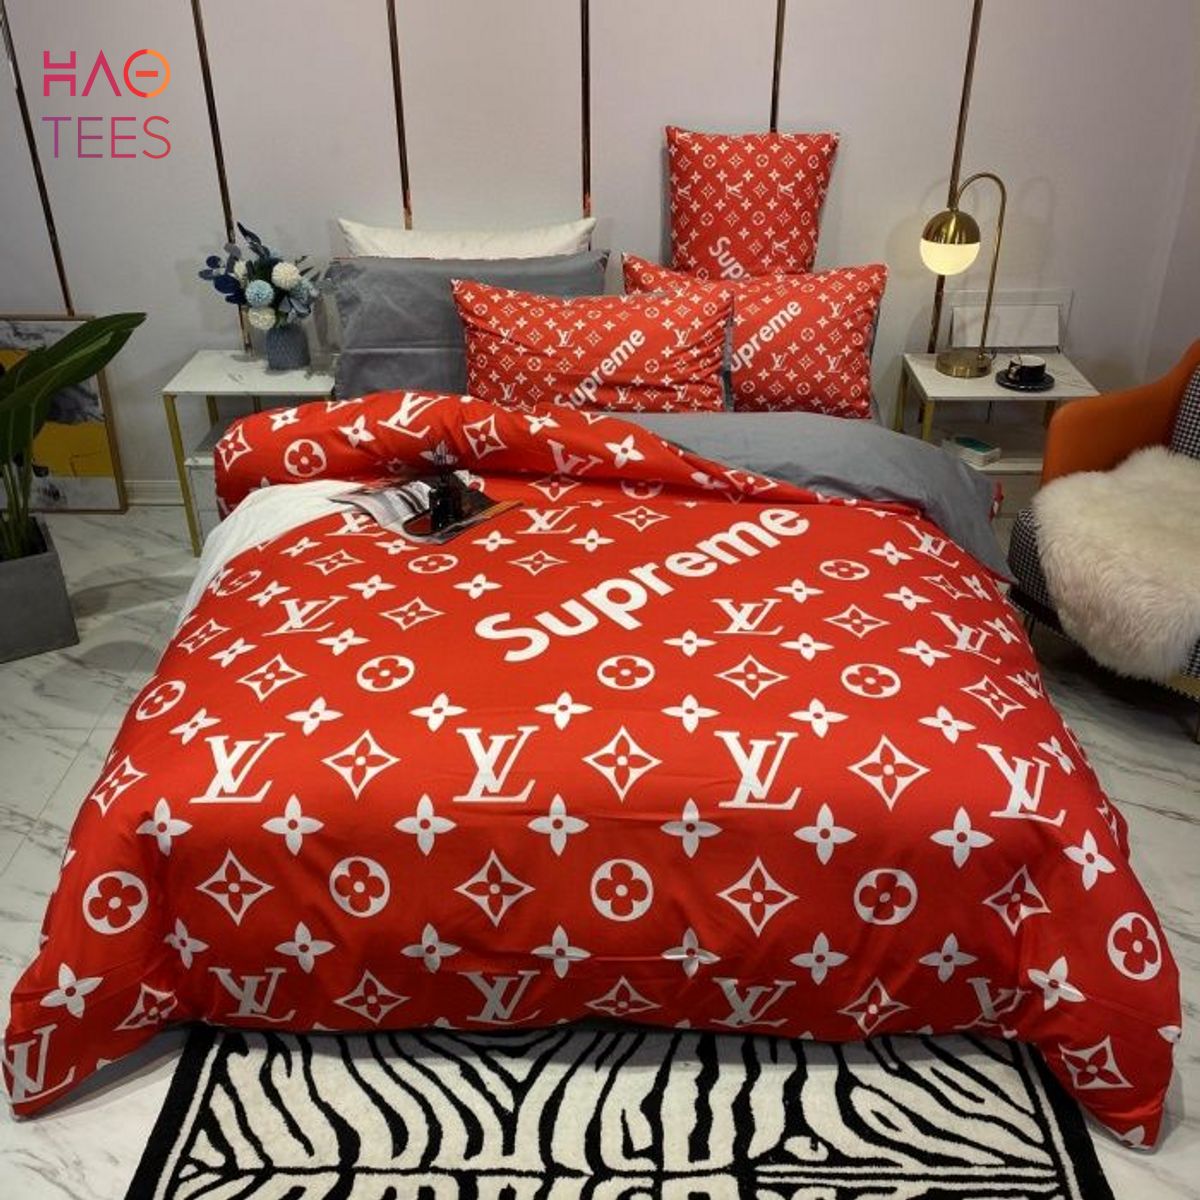 LV Sp Bedding Sets Duvet Cover Lv Bedroom Sets Luxury Brand Bedding V2